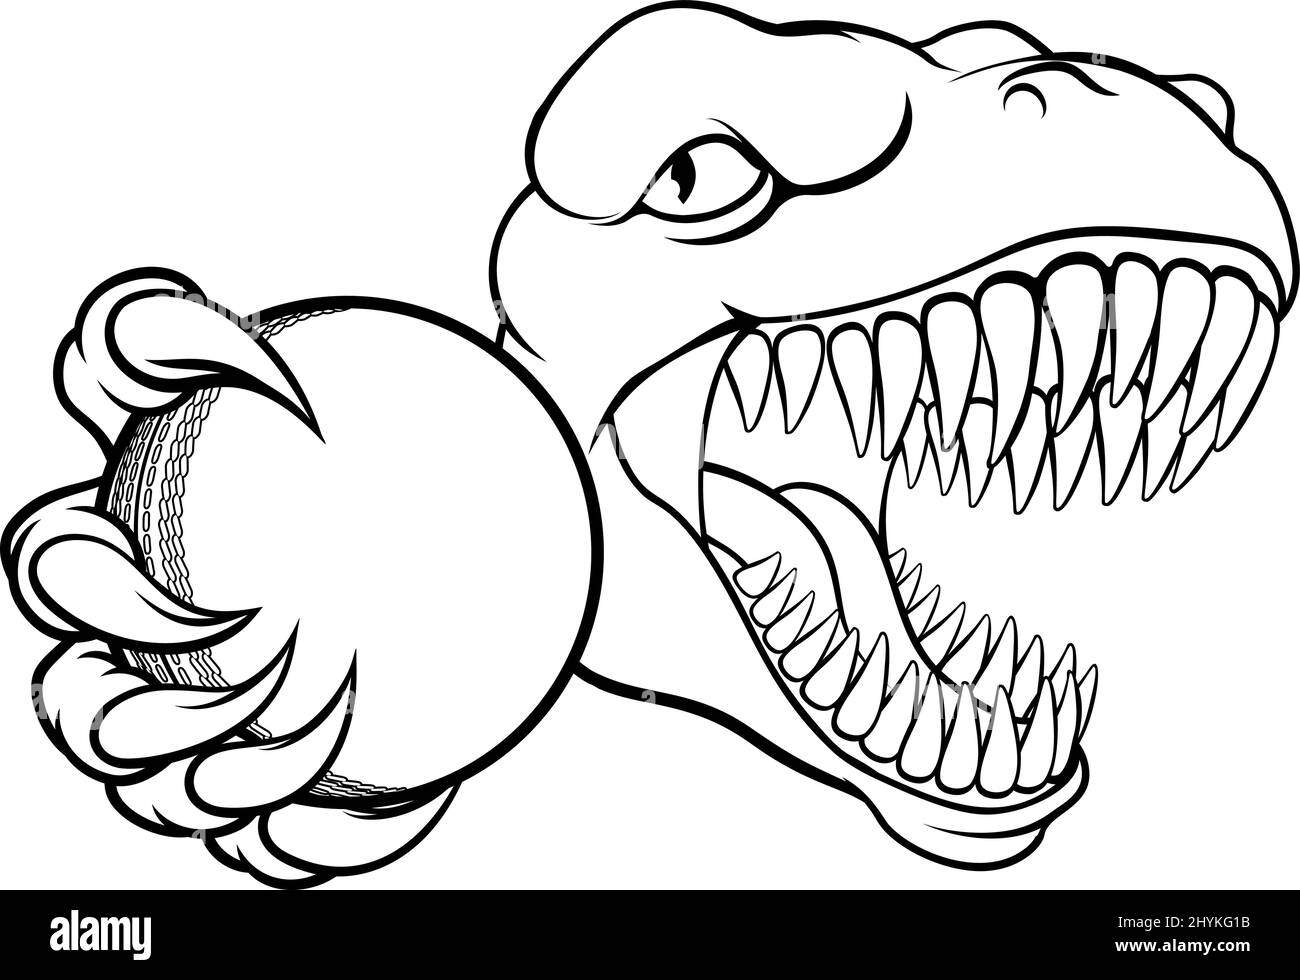 Joueur de cricket de dinosaure Sports Animal Mascot Illustration de Vecteur